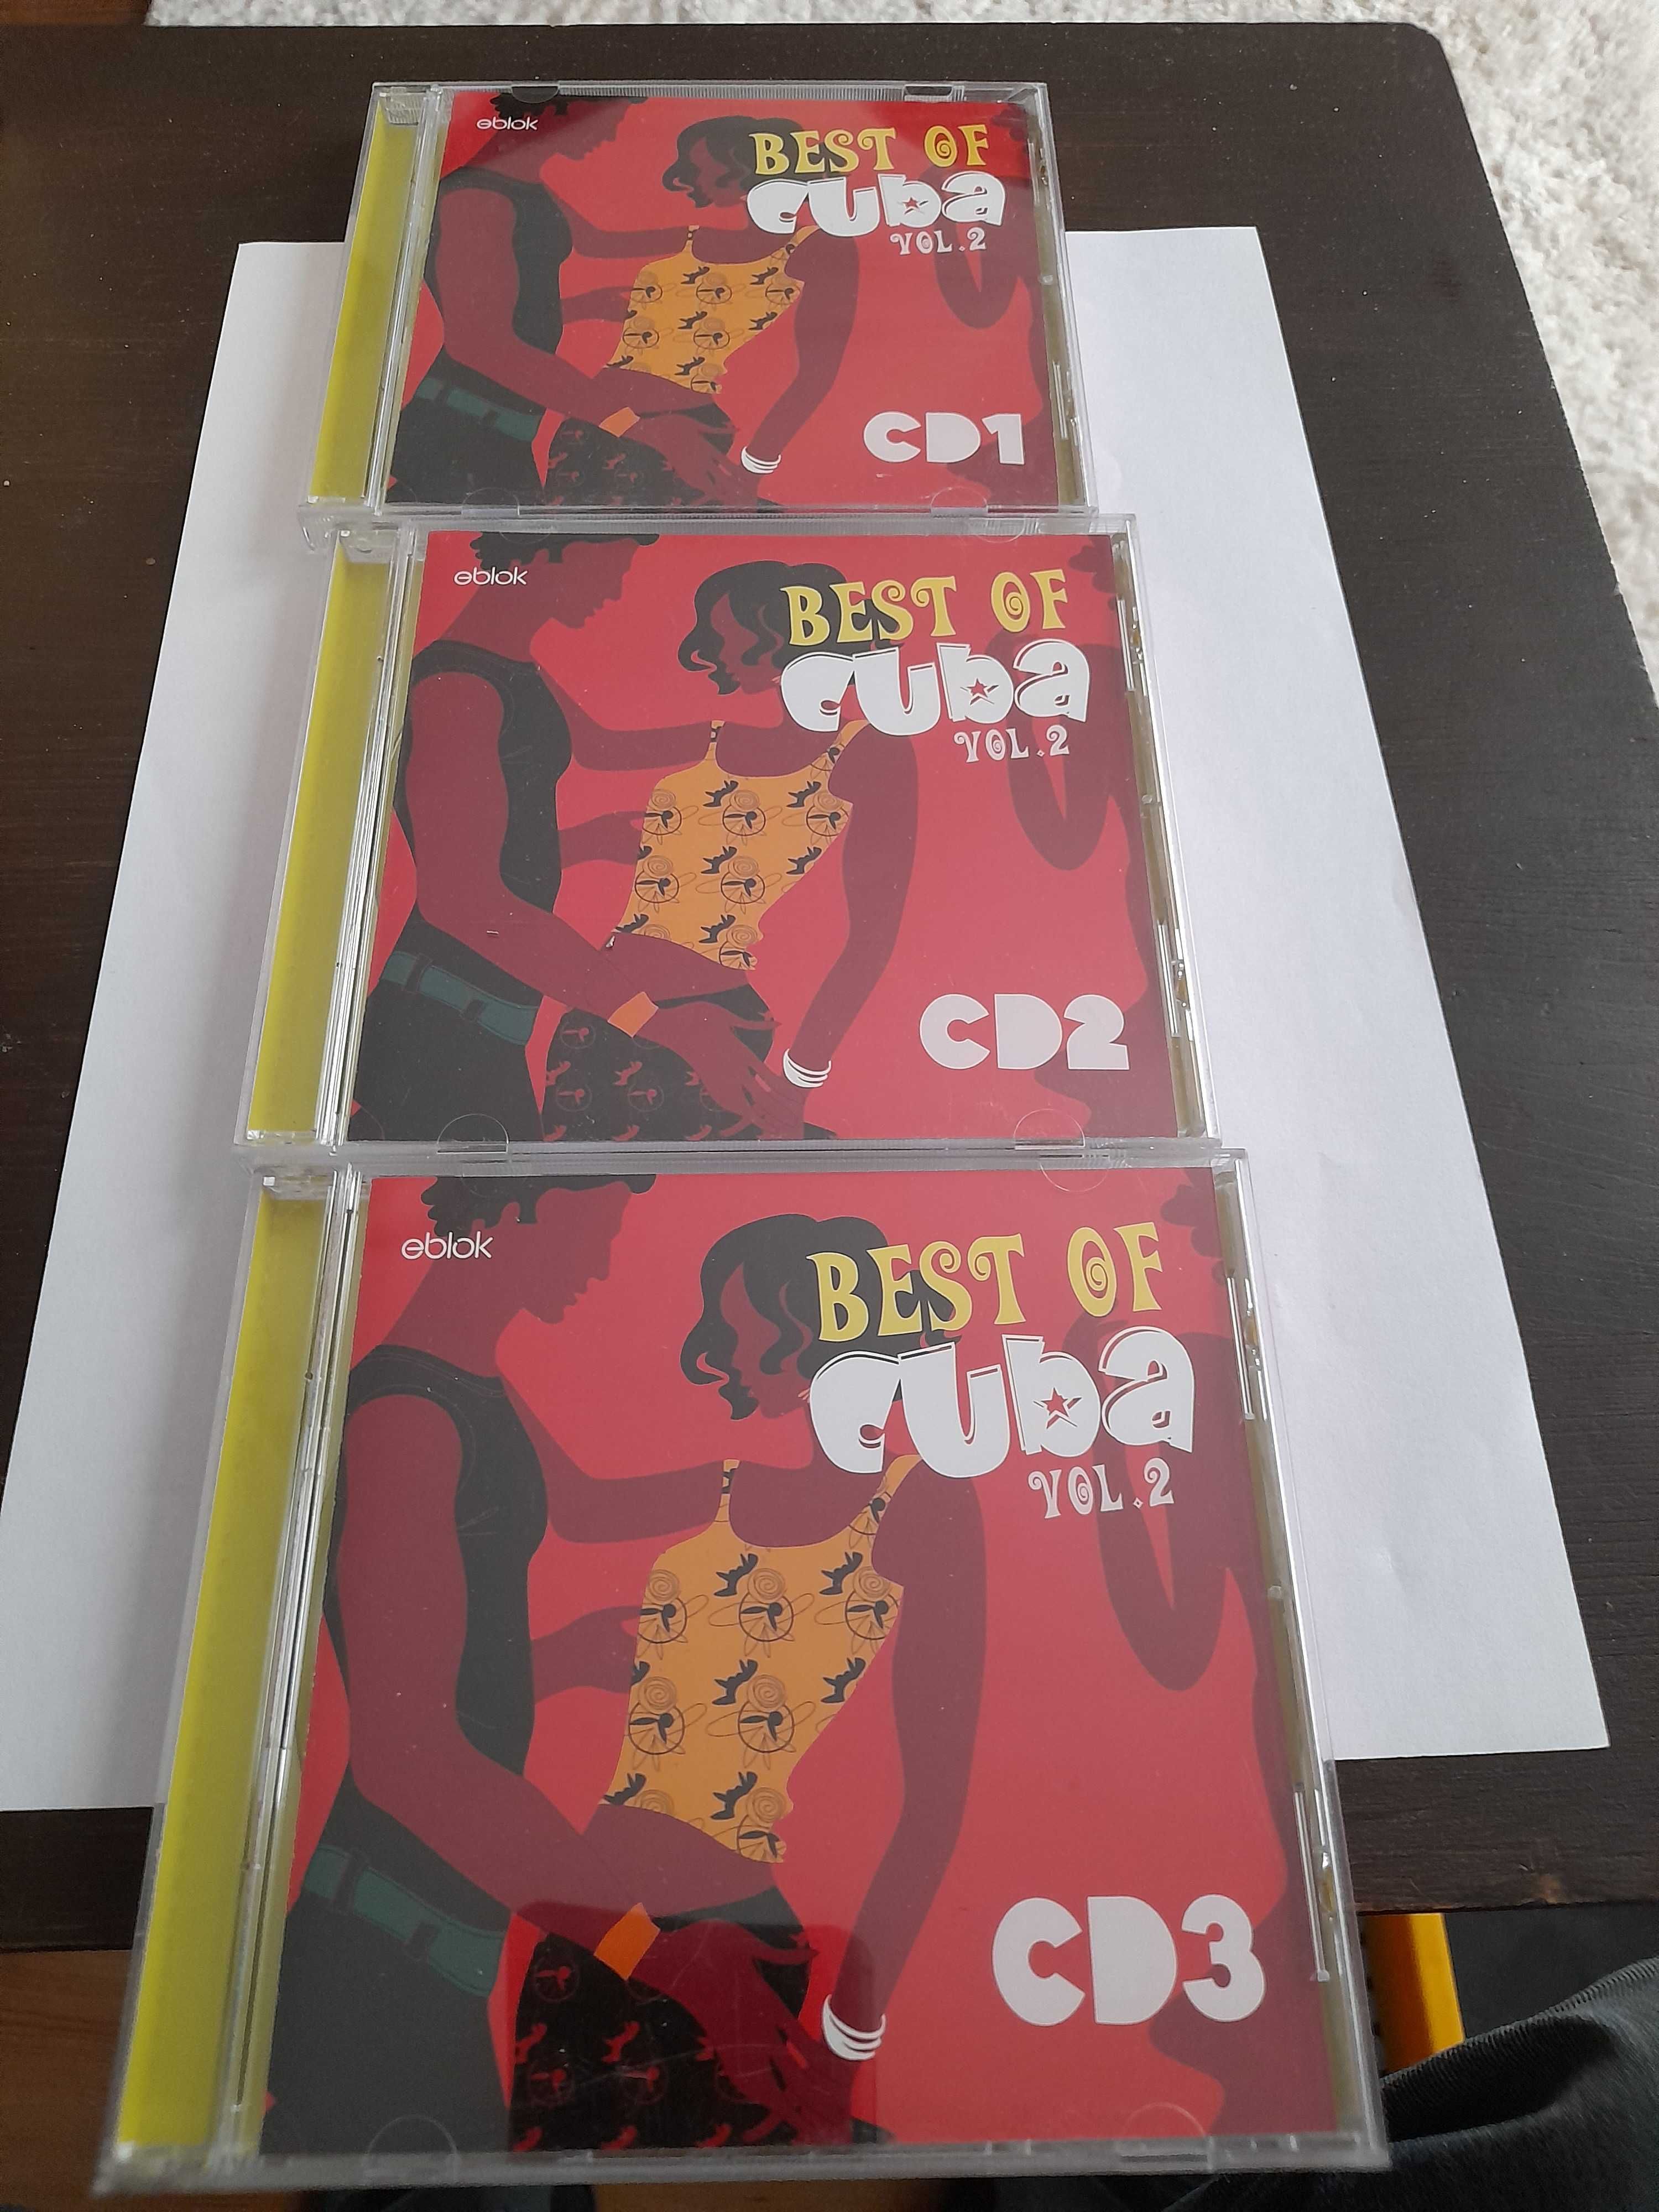 Best of Cuba. Vol.2 CD 1,2,3. Płyty CD